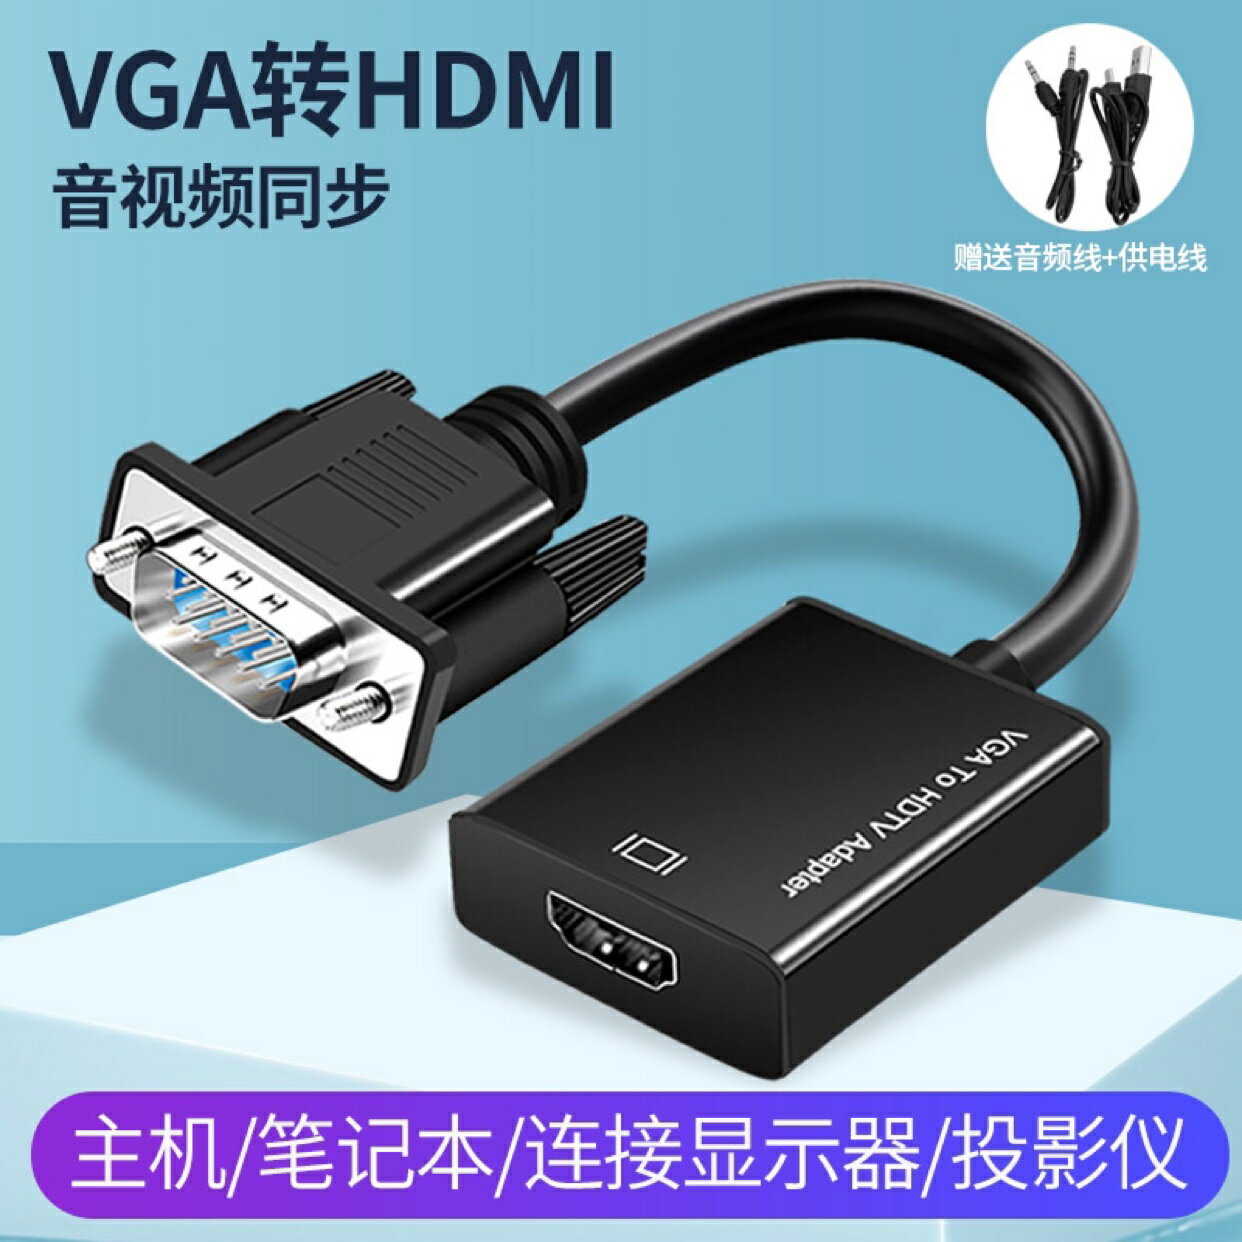 VGA轉HDMI轉換器帶音頻vga公頭轉hdmi母頭筆記本電視電腦連顯示器線電視投影儀轉換頭vja轉高清hami線接口